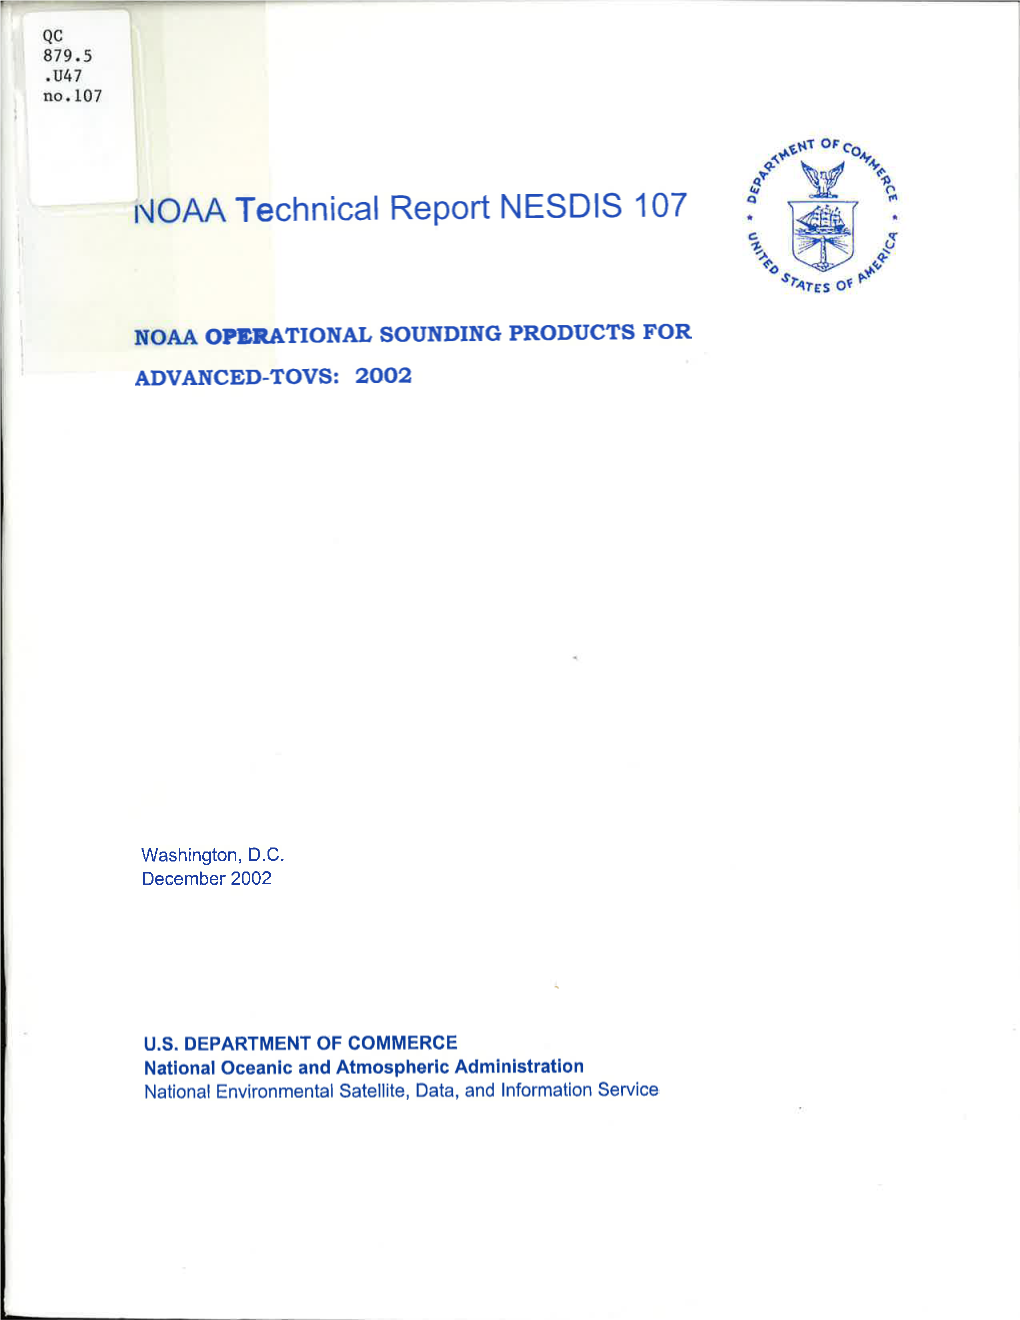 Technical Report NESDIS 107